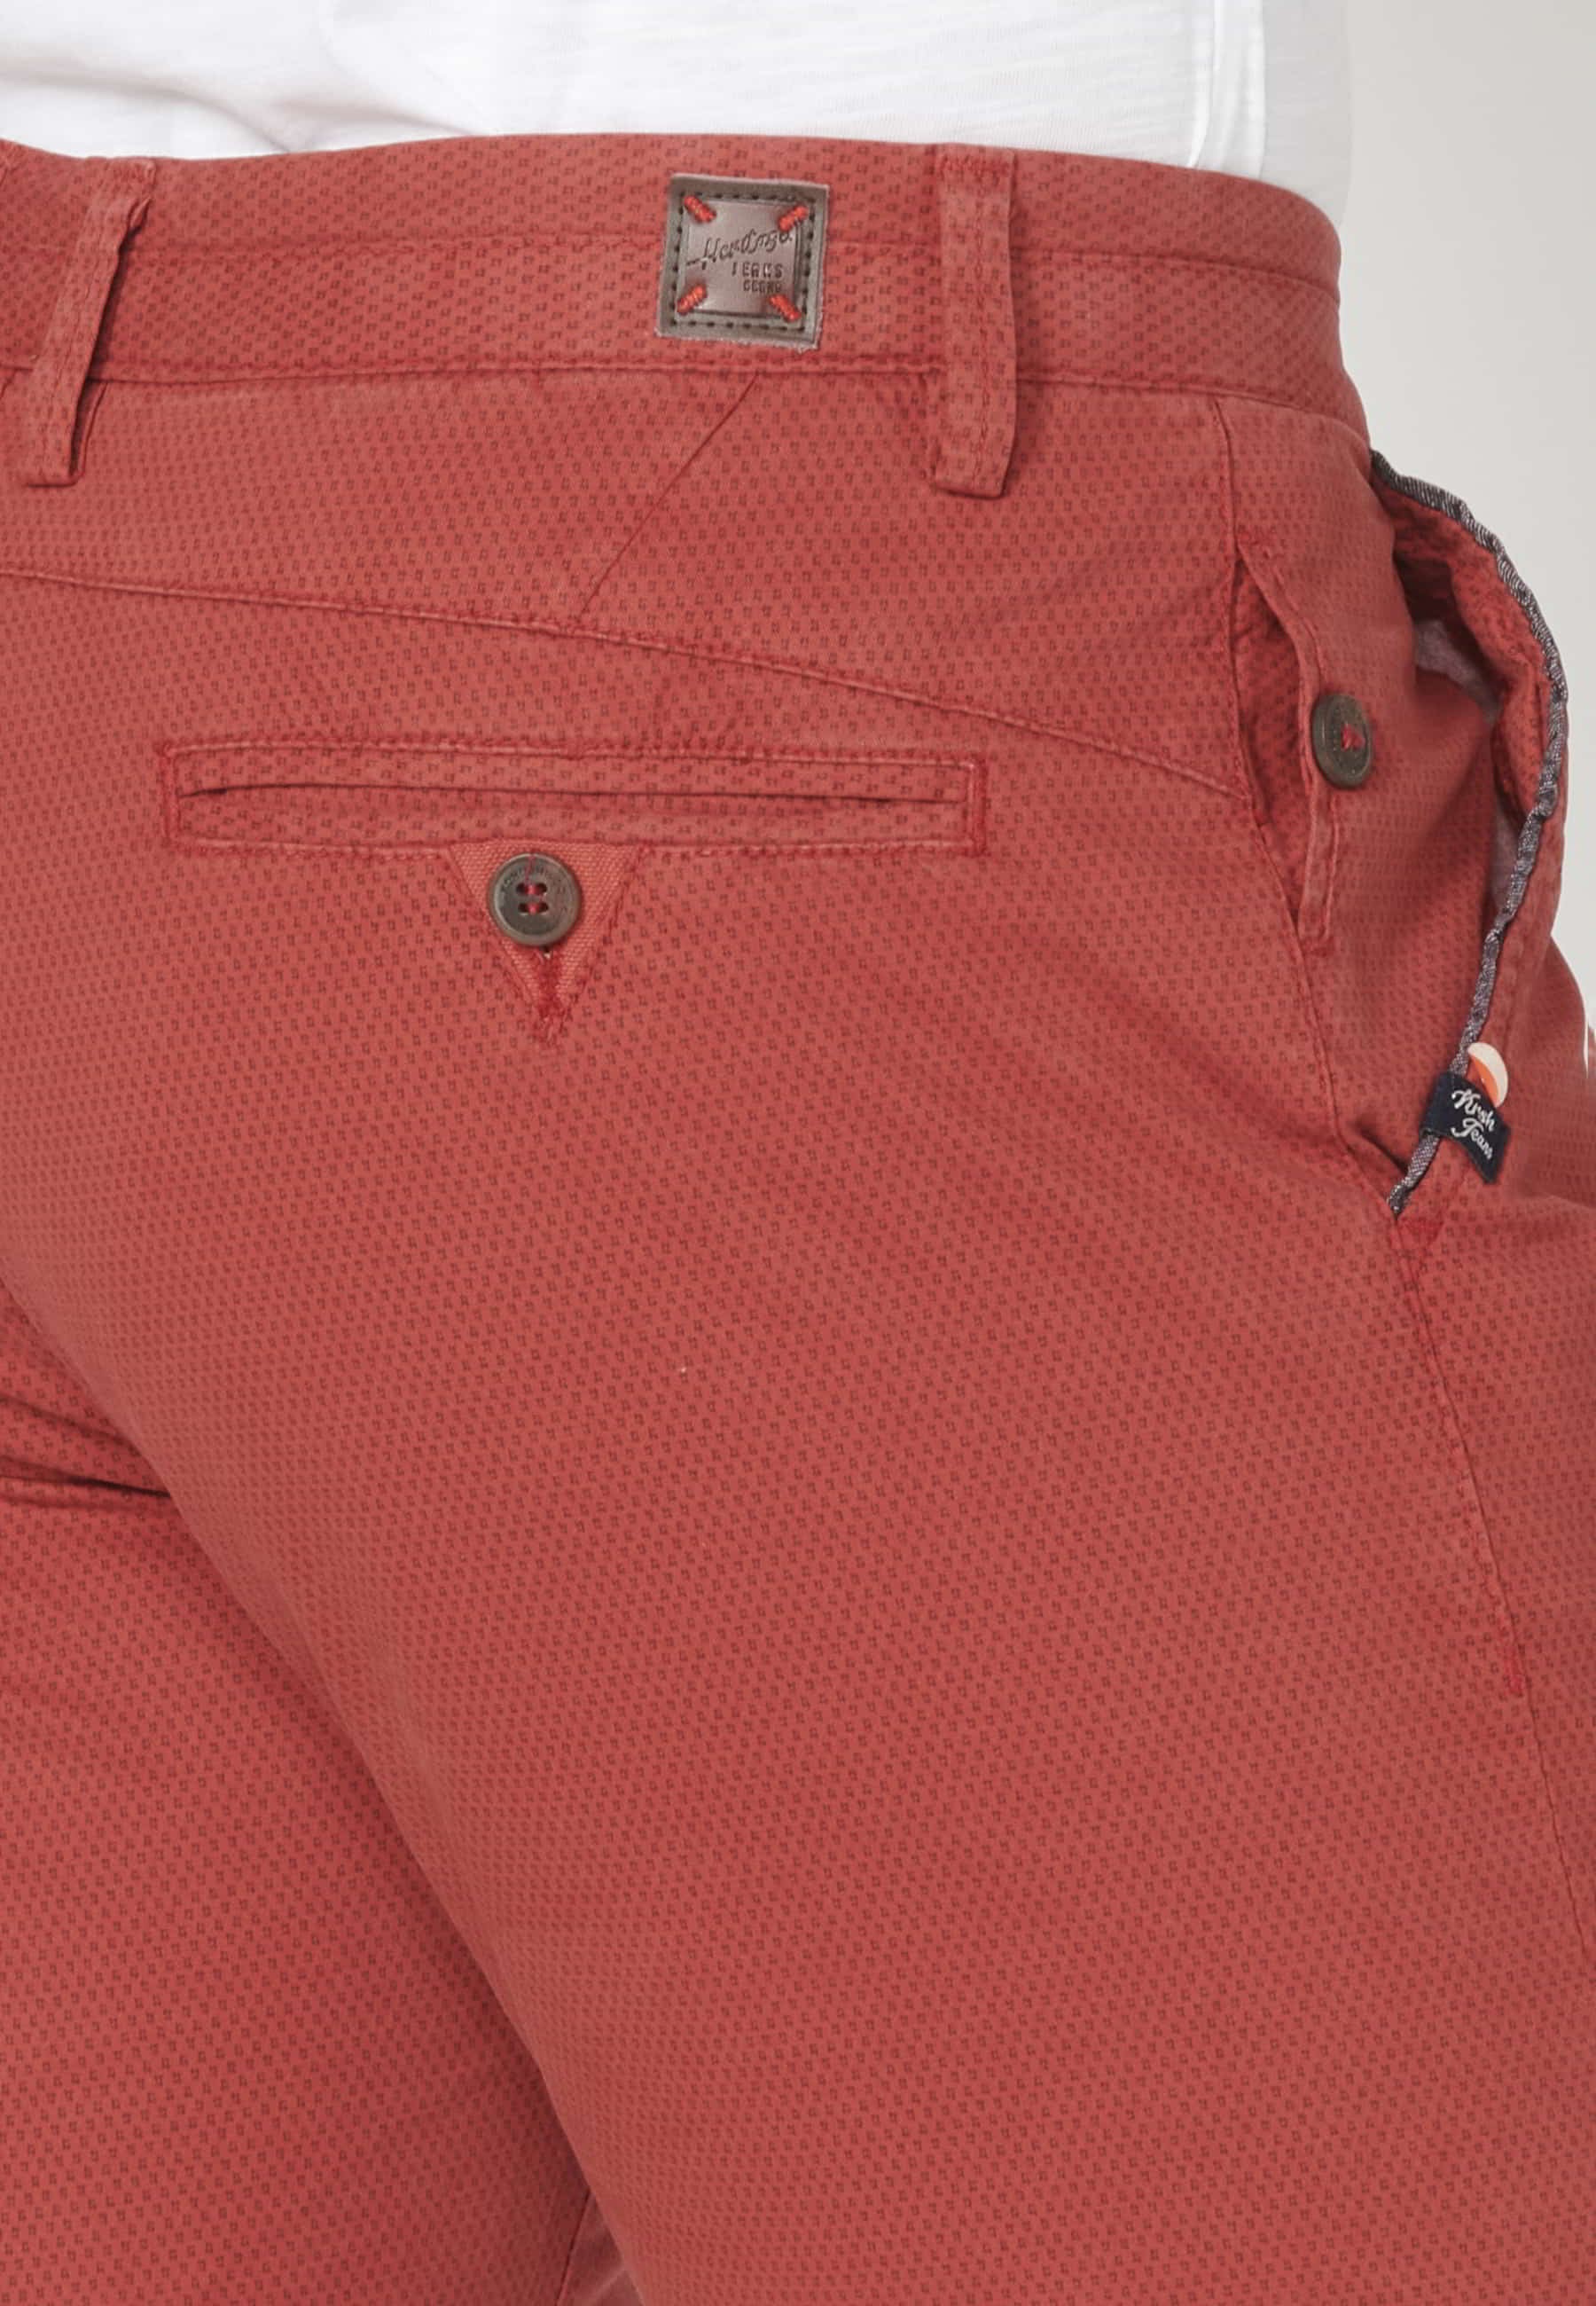 Pantalón corto Bermuda estilo Chino color Rojo para Hombre